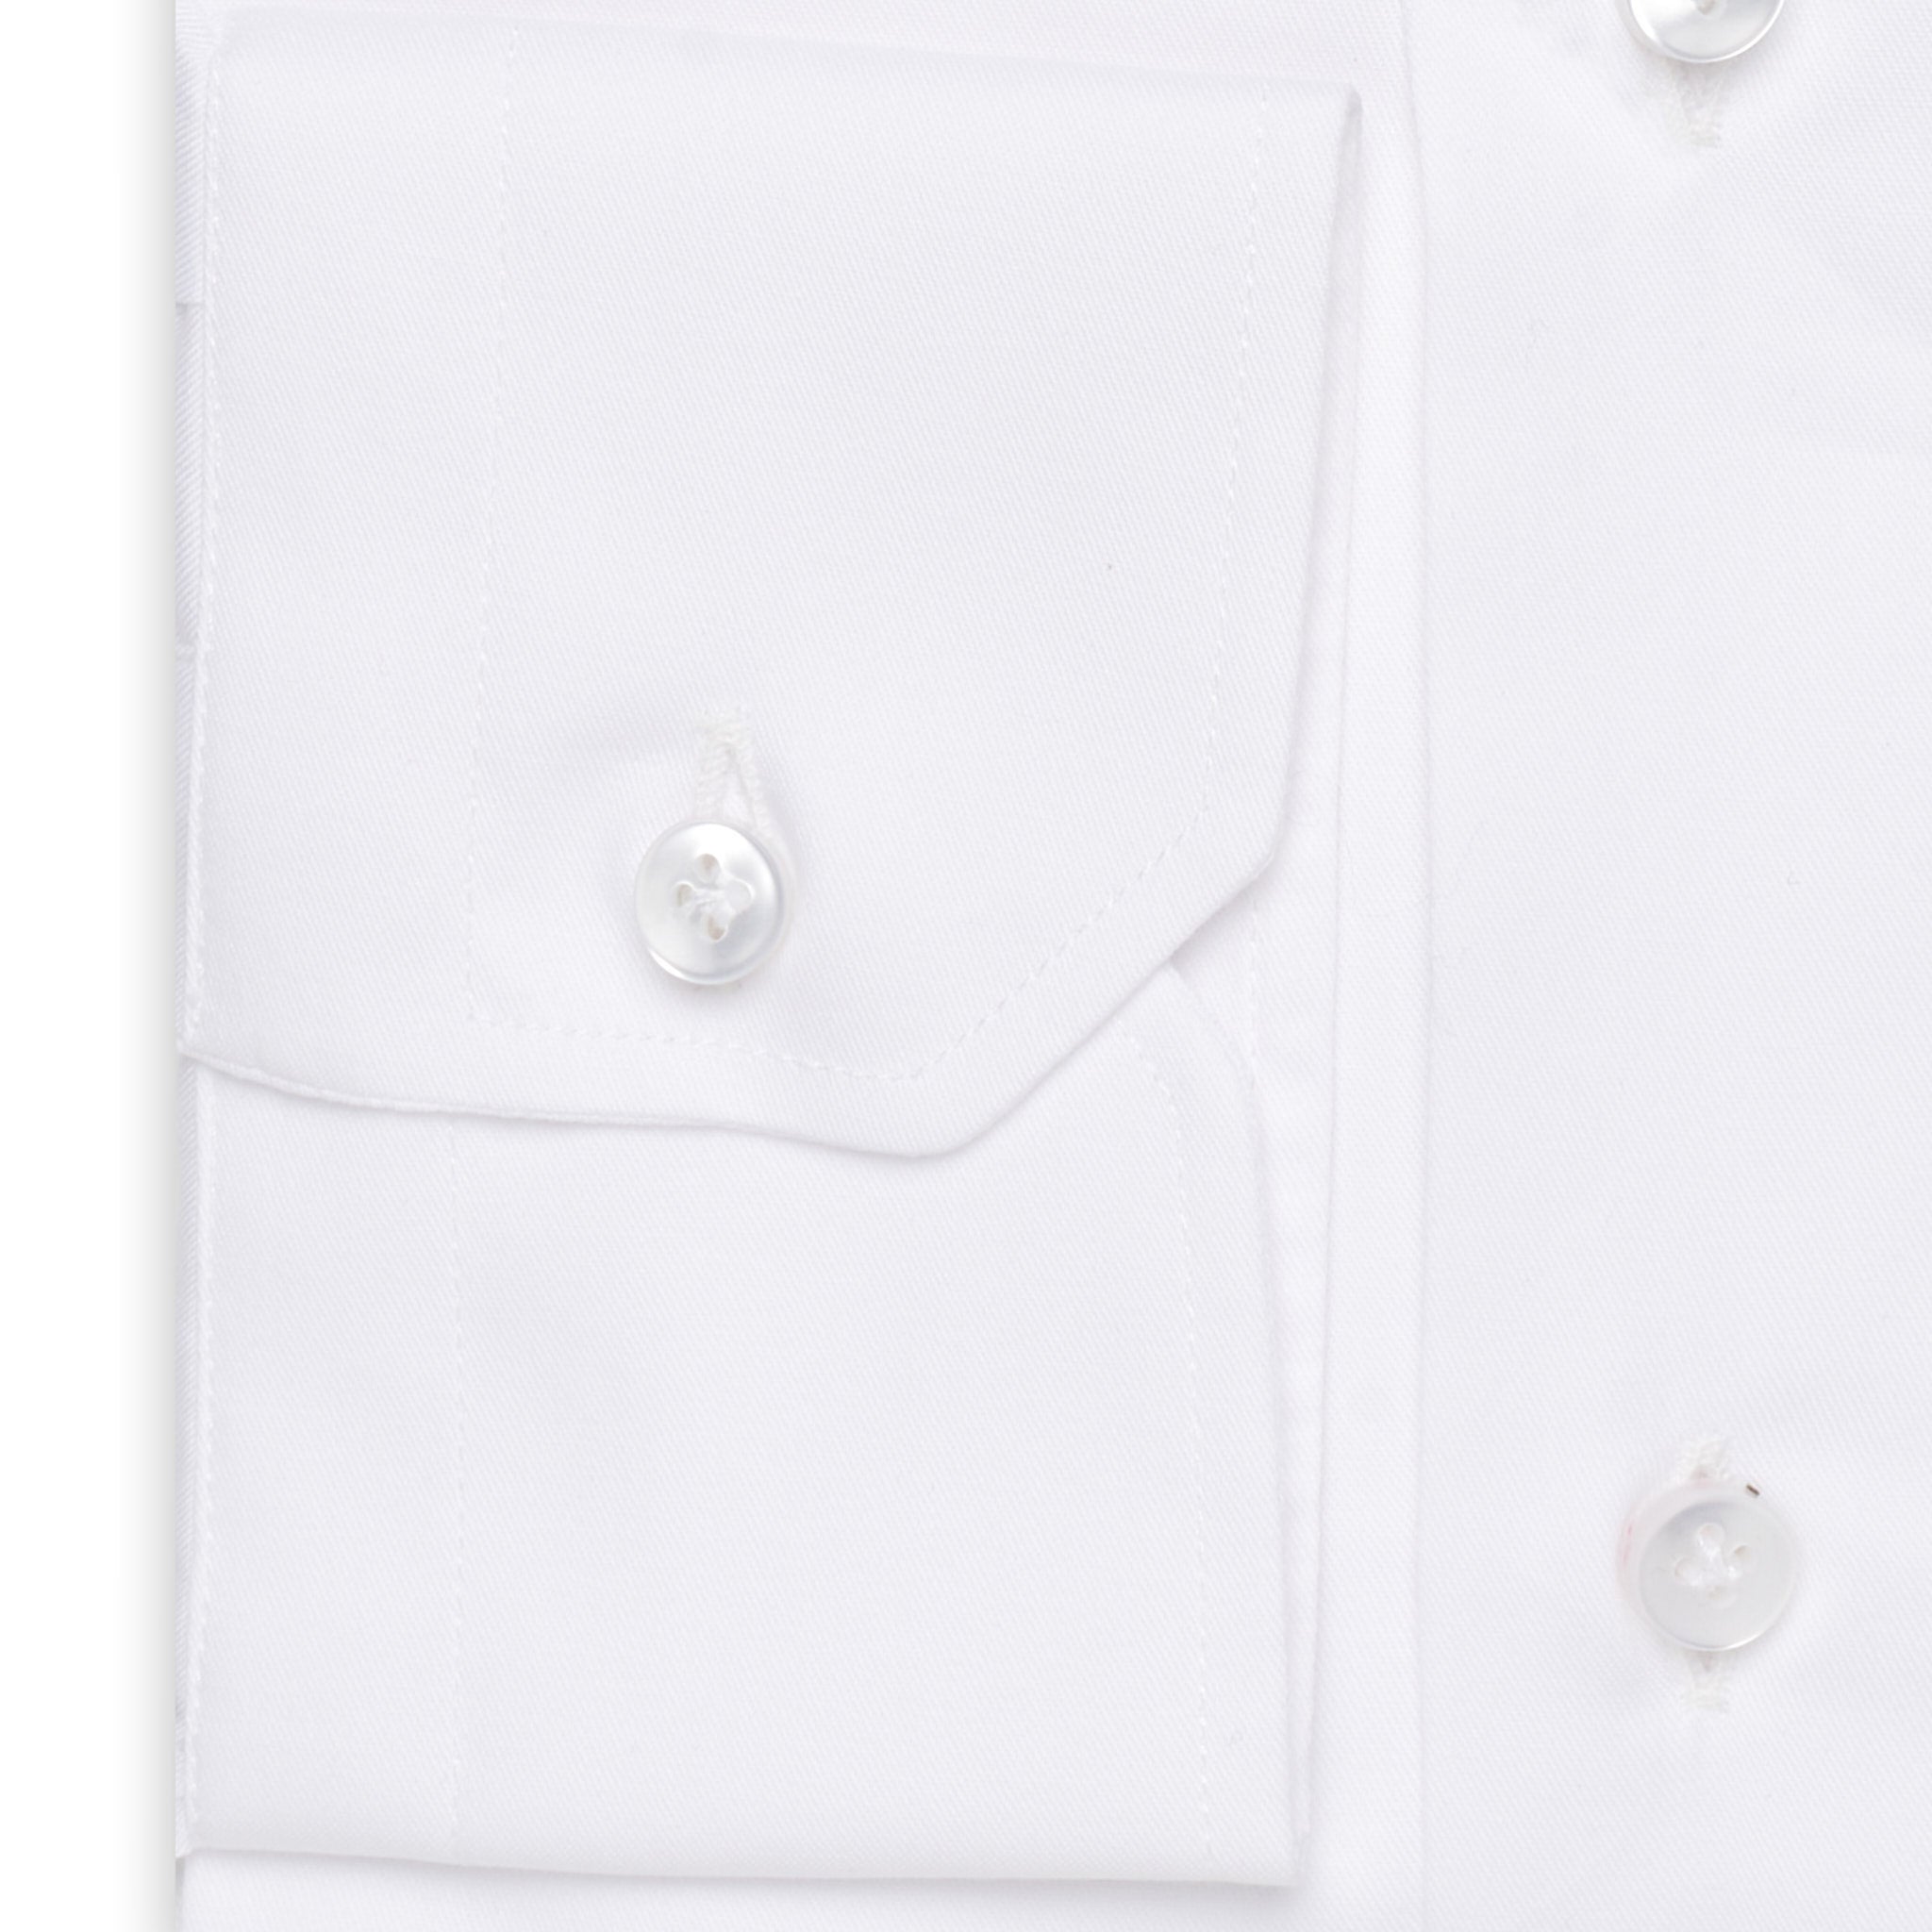 SARTORIO Napoli by KITON White Twill Cotton Dress Shirt NEW Slim Fit